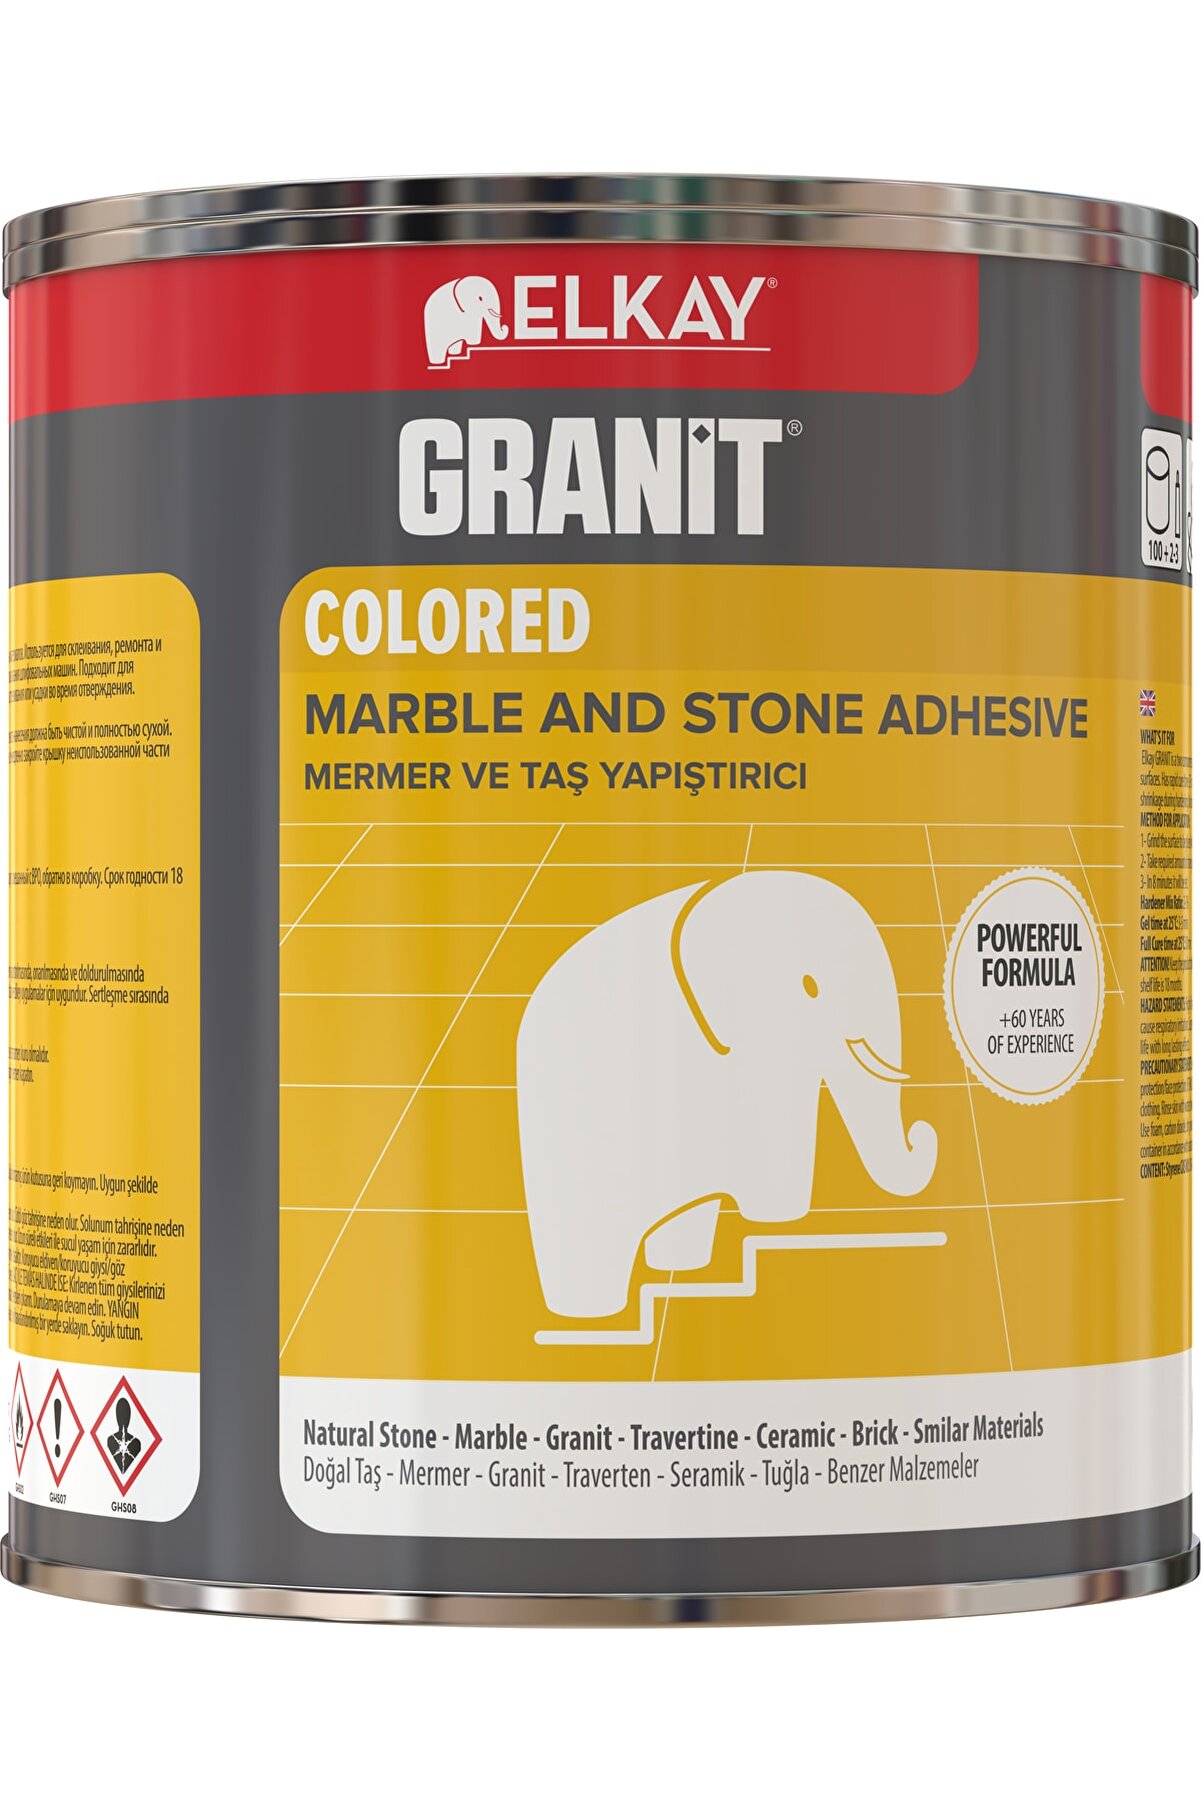 GRANİT METAL Granit Colored Eb25 Mermer Ve Taş Yapıştırıcı 250 gr